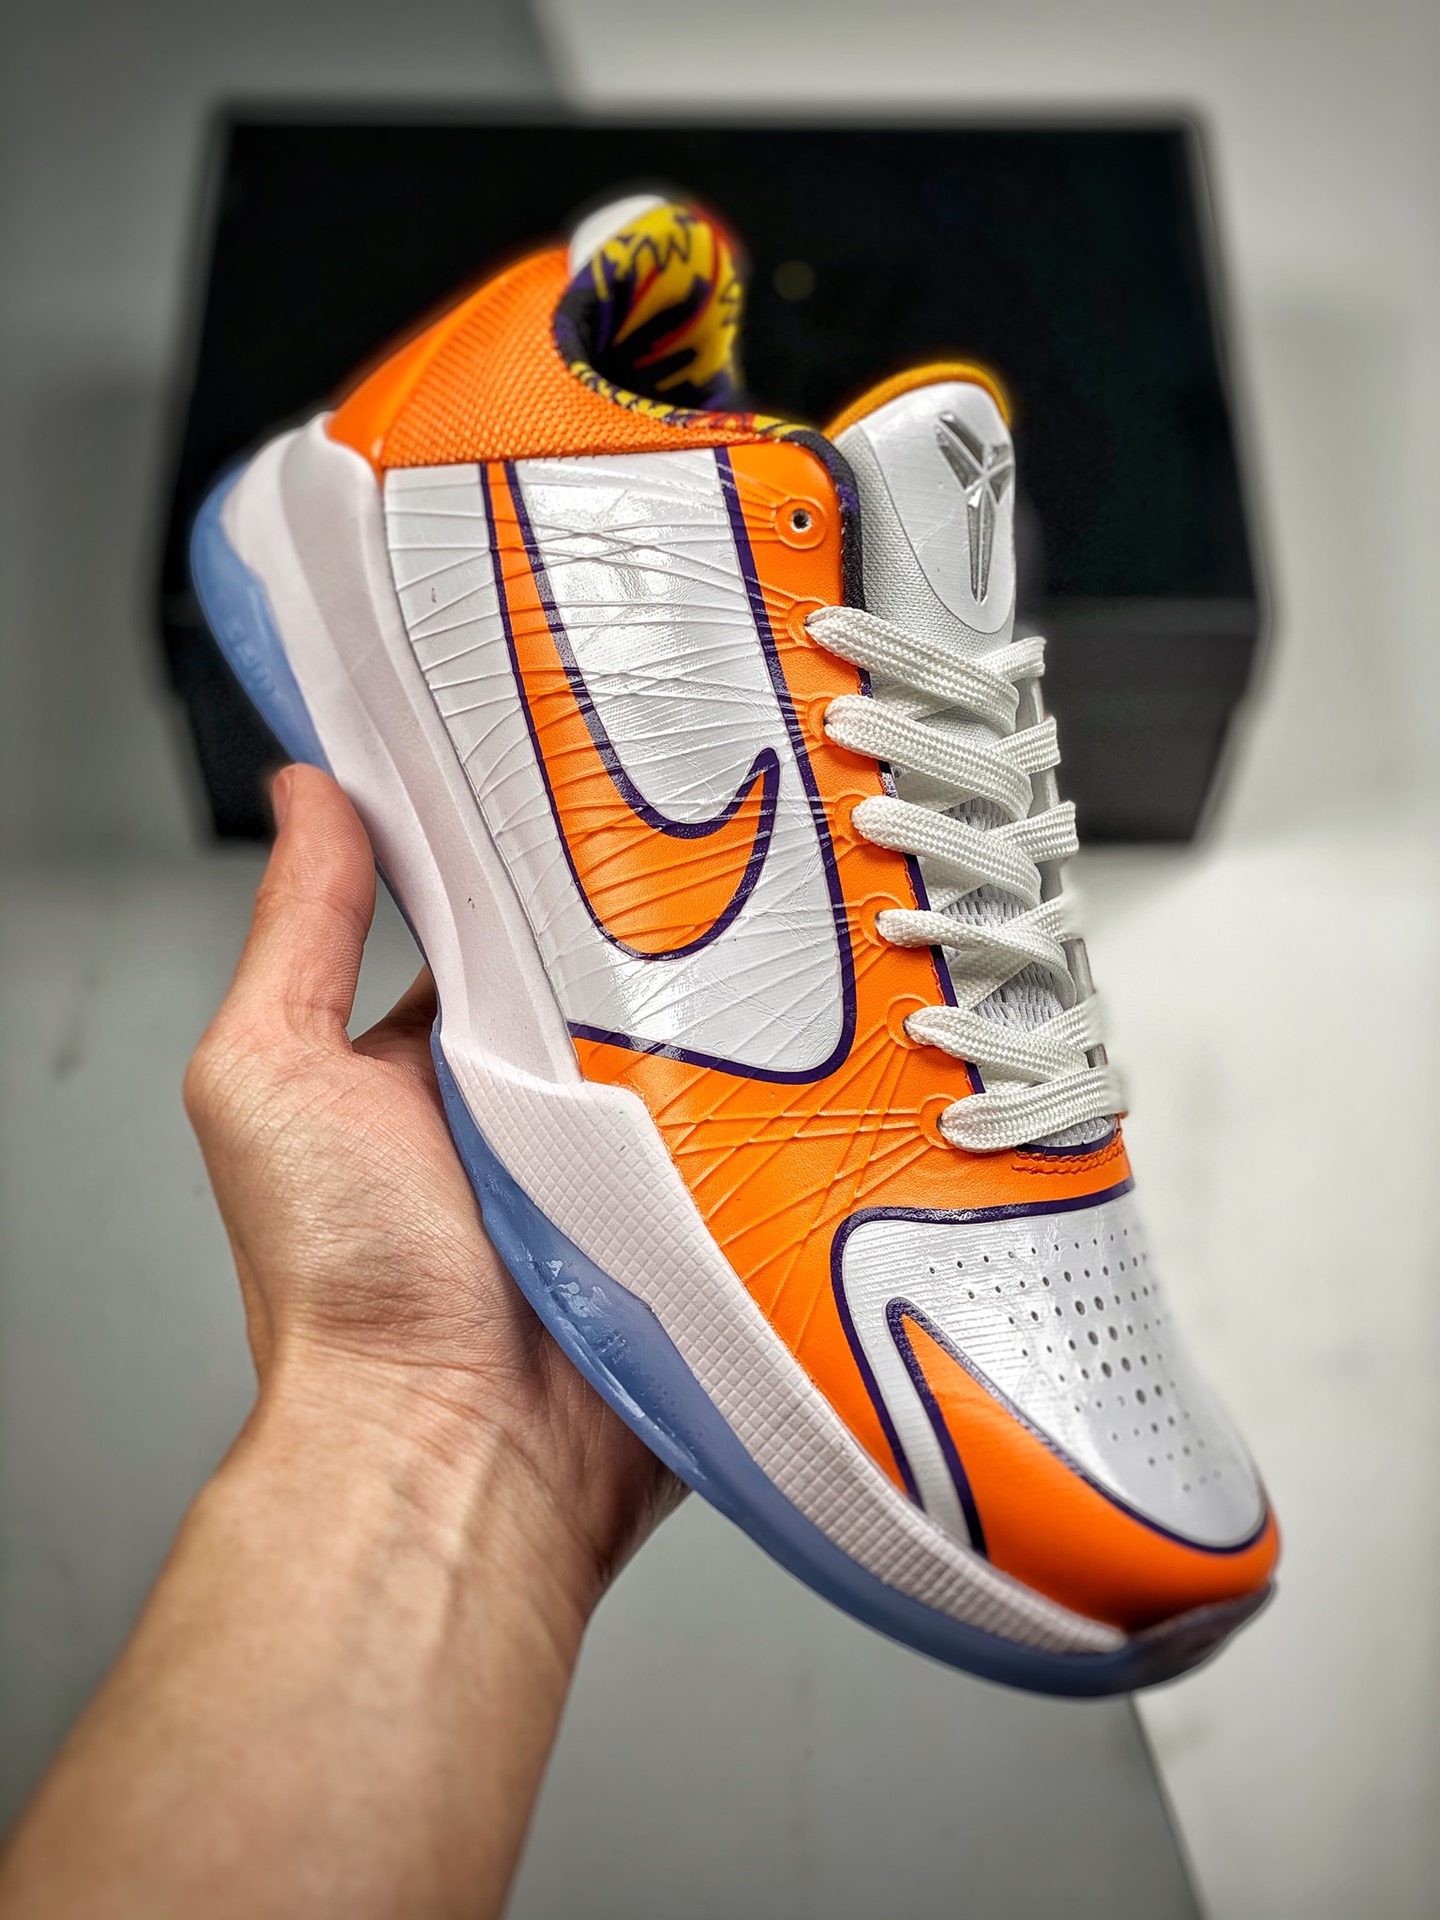 Devin Booker's x Nike Kobe 5 Protro White Orange Shoes